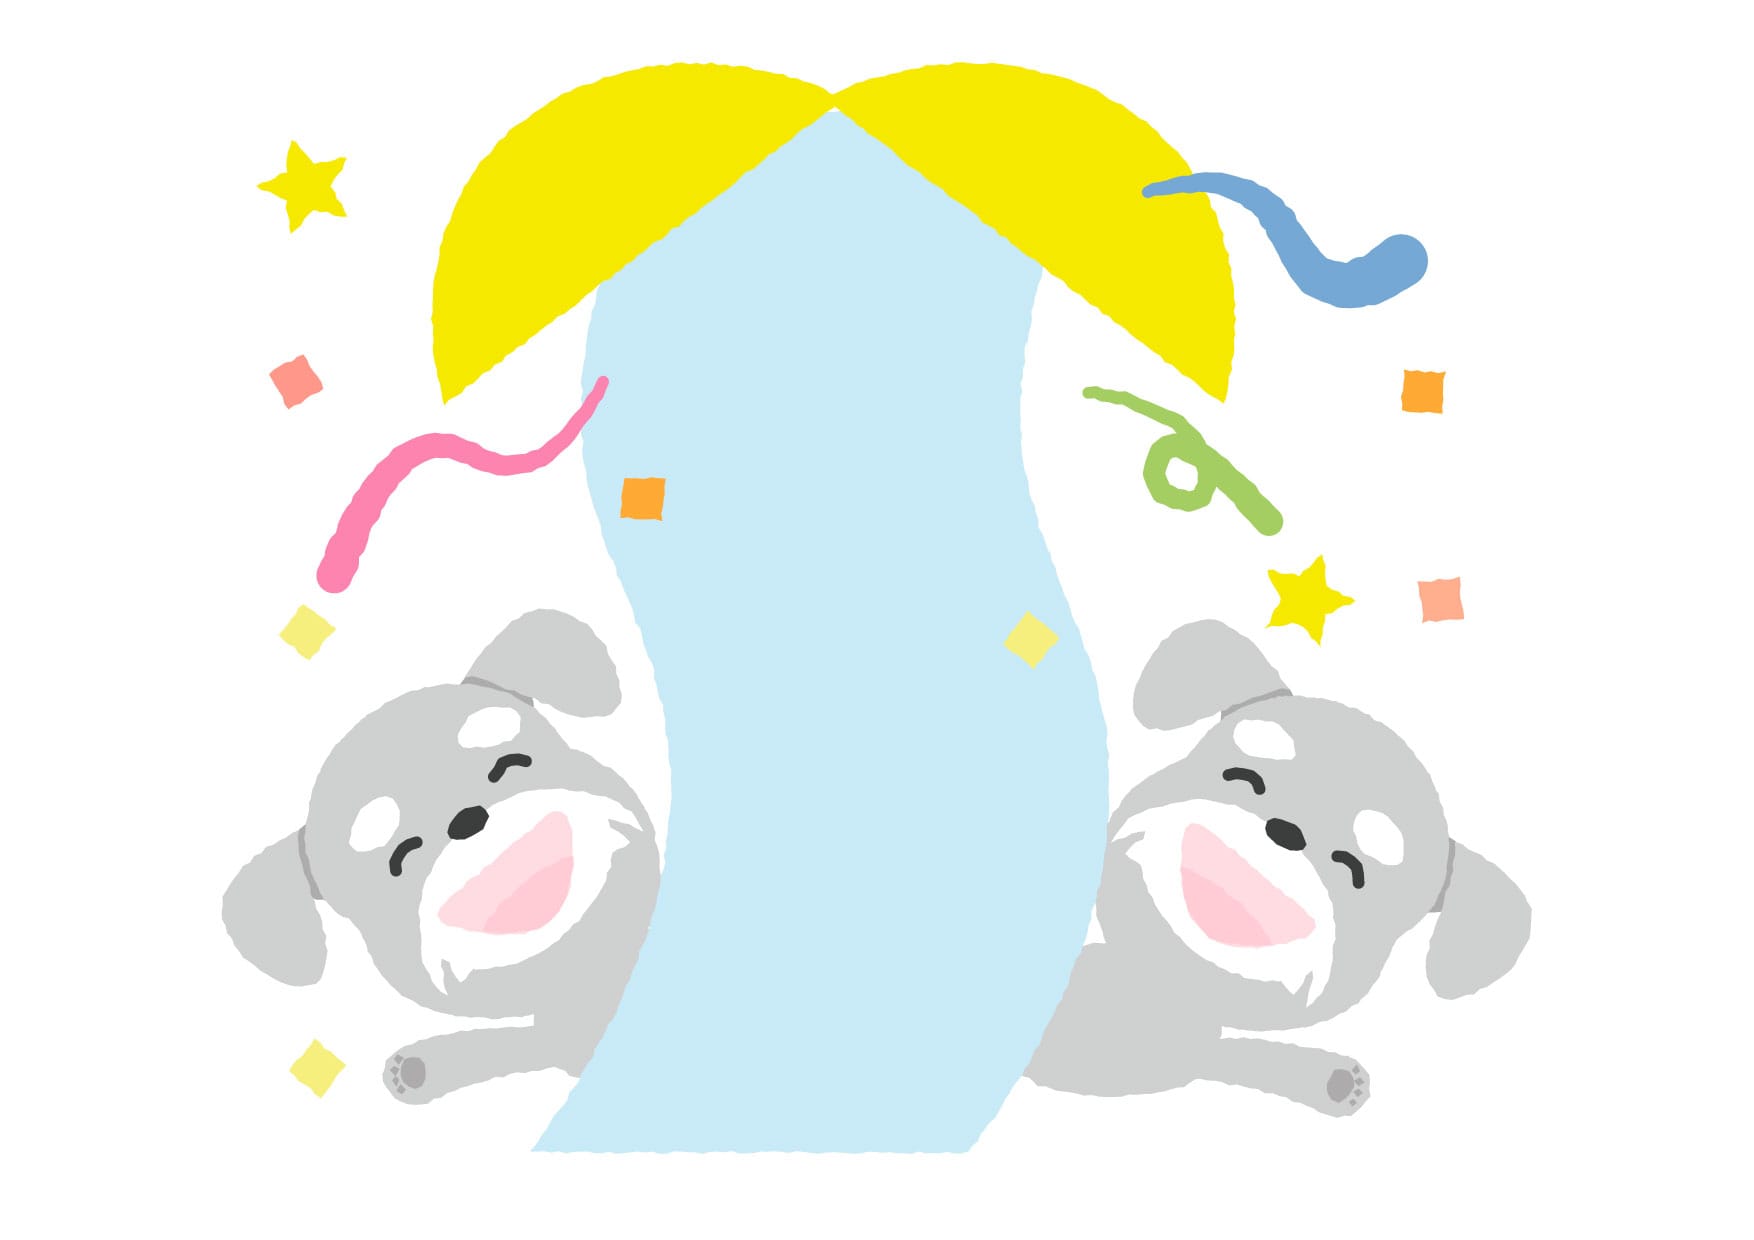 可愛いイラスト無料 犬 くす玉 Free Illustration Dog Kusudama 公式 イラストダウンロード